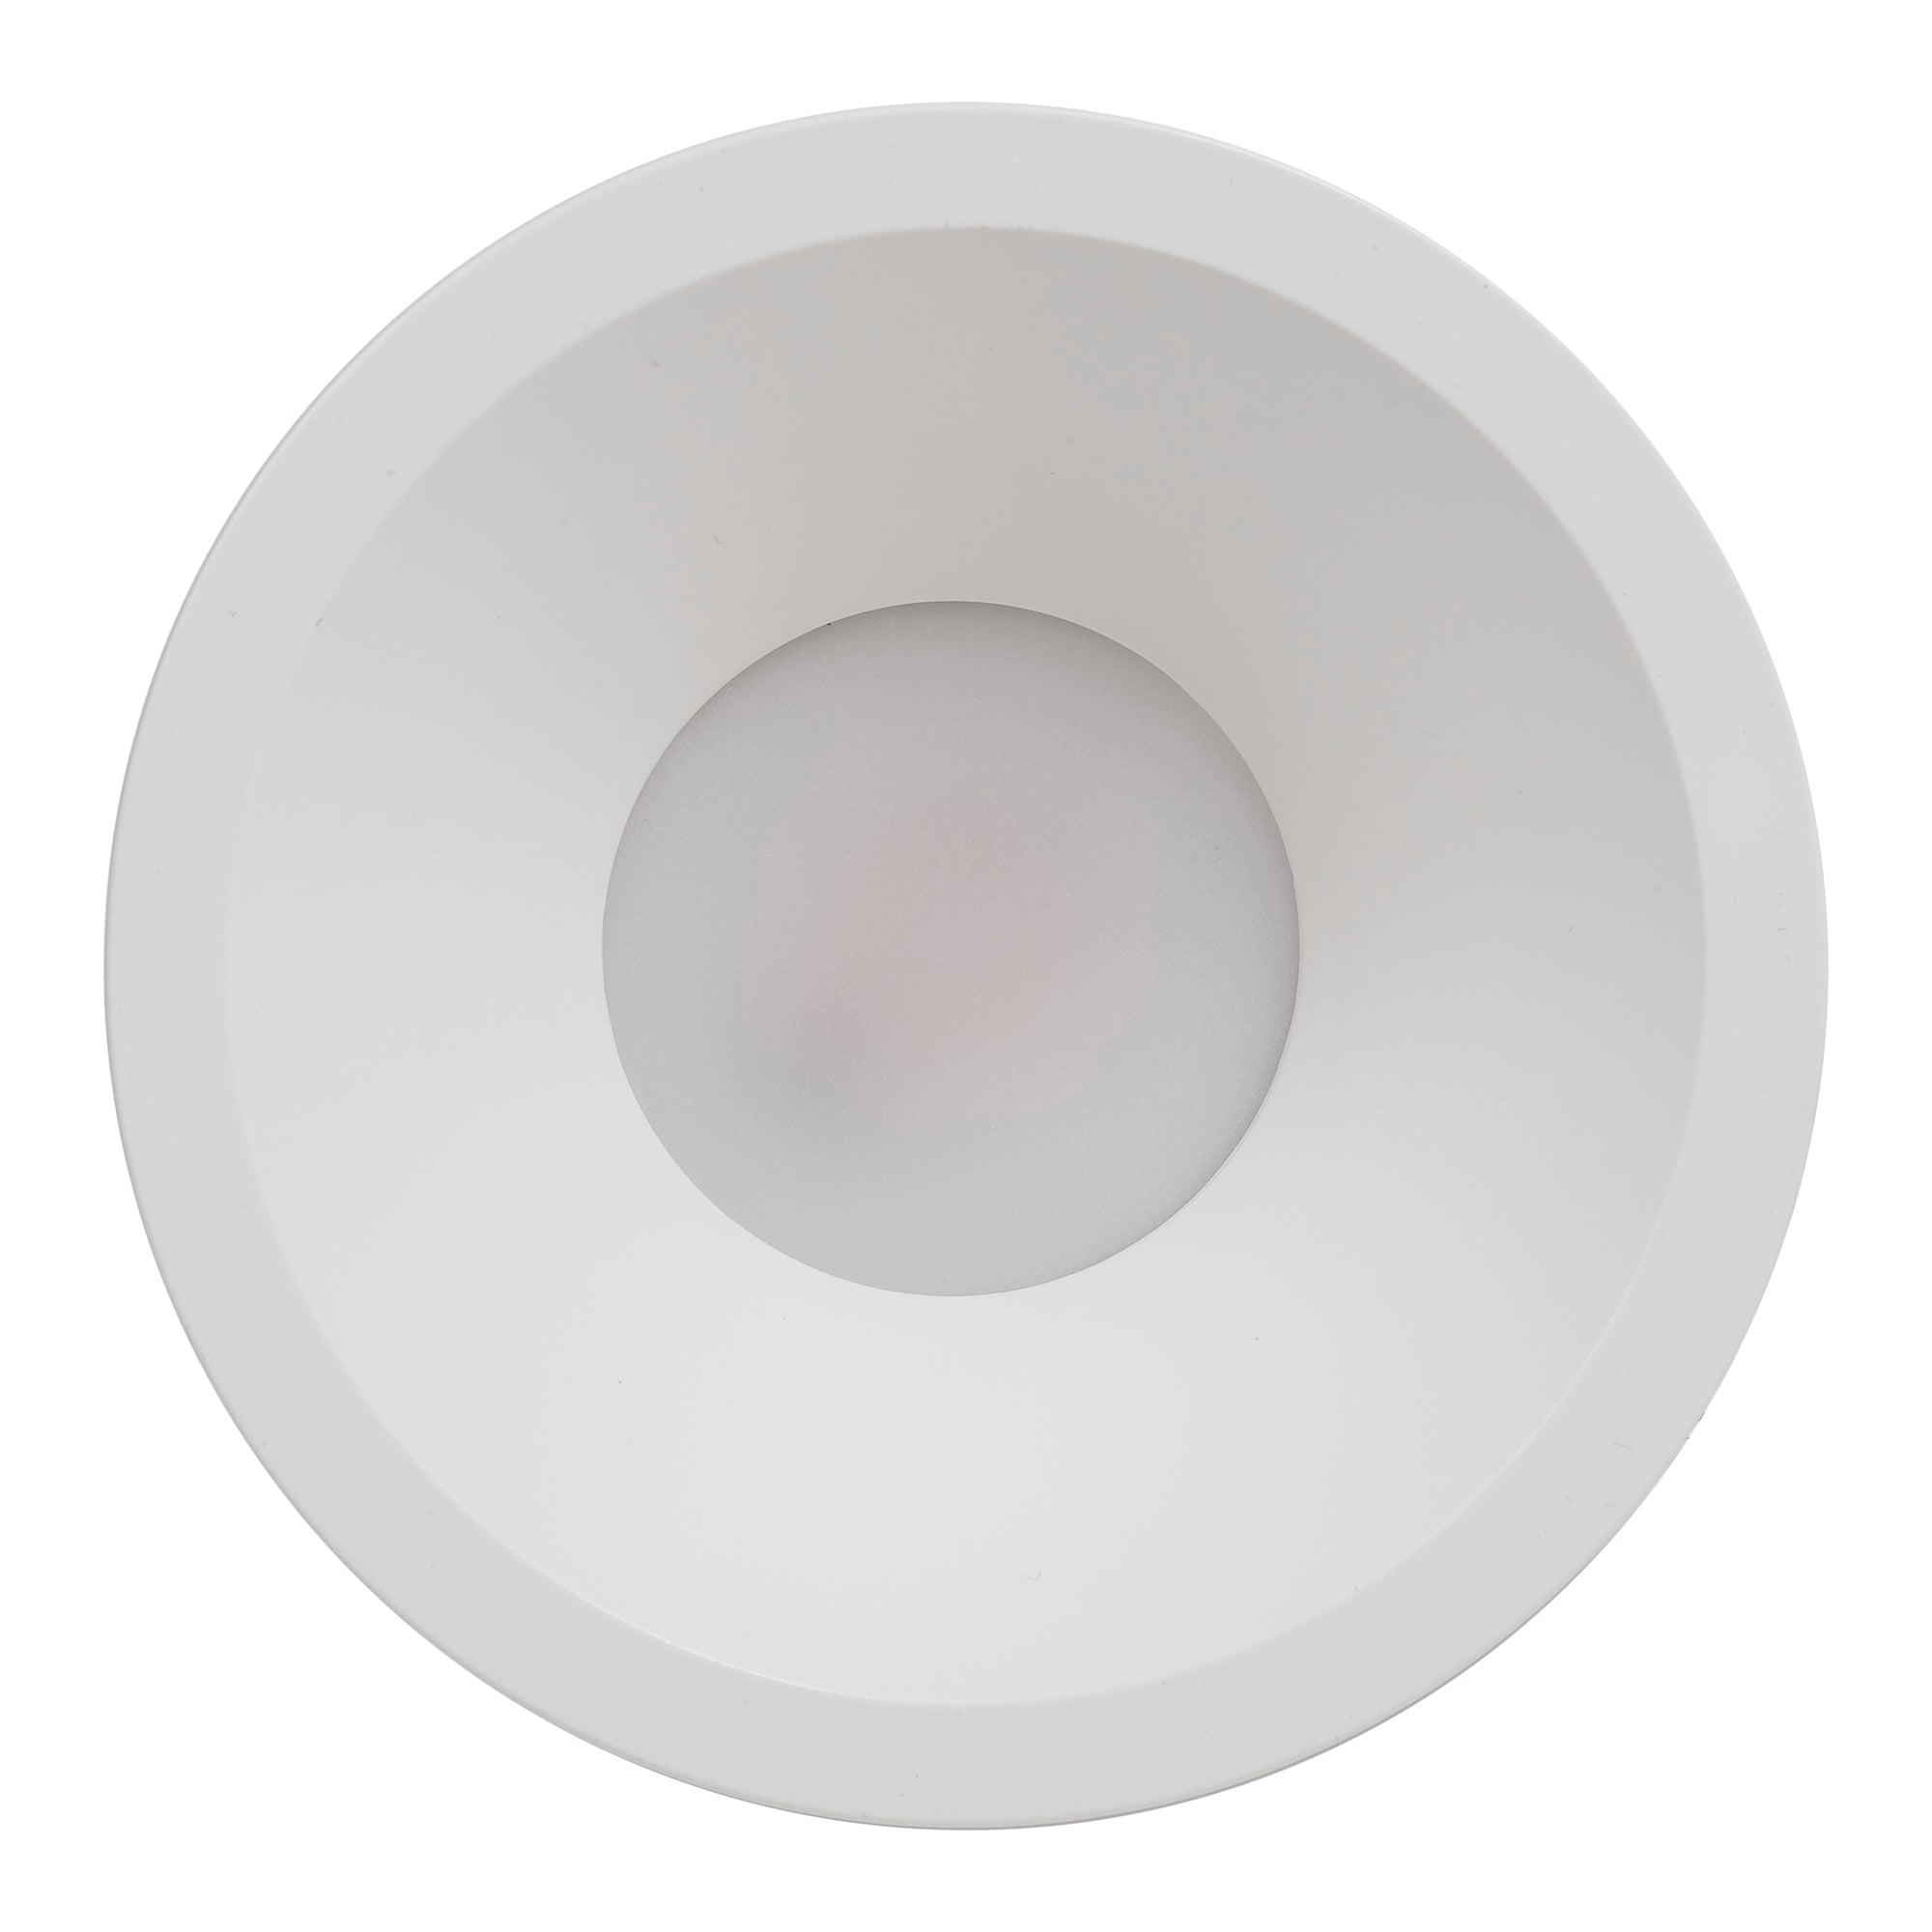 HV5528D2W-WHT - Gleam White Fixed Dim to Warm LED Downlight